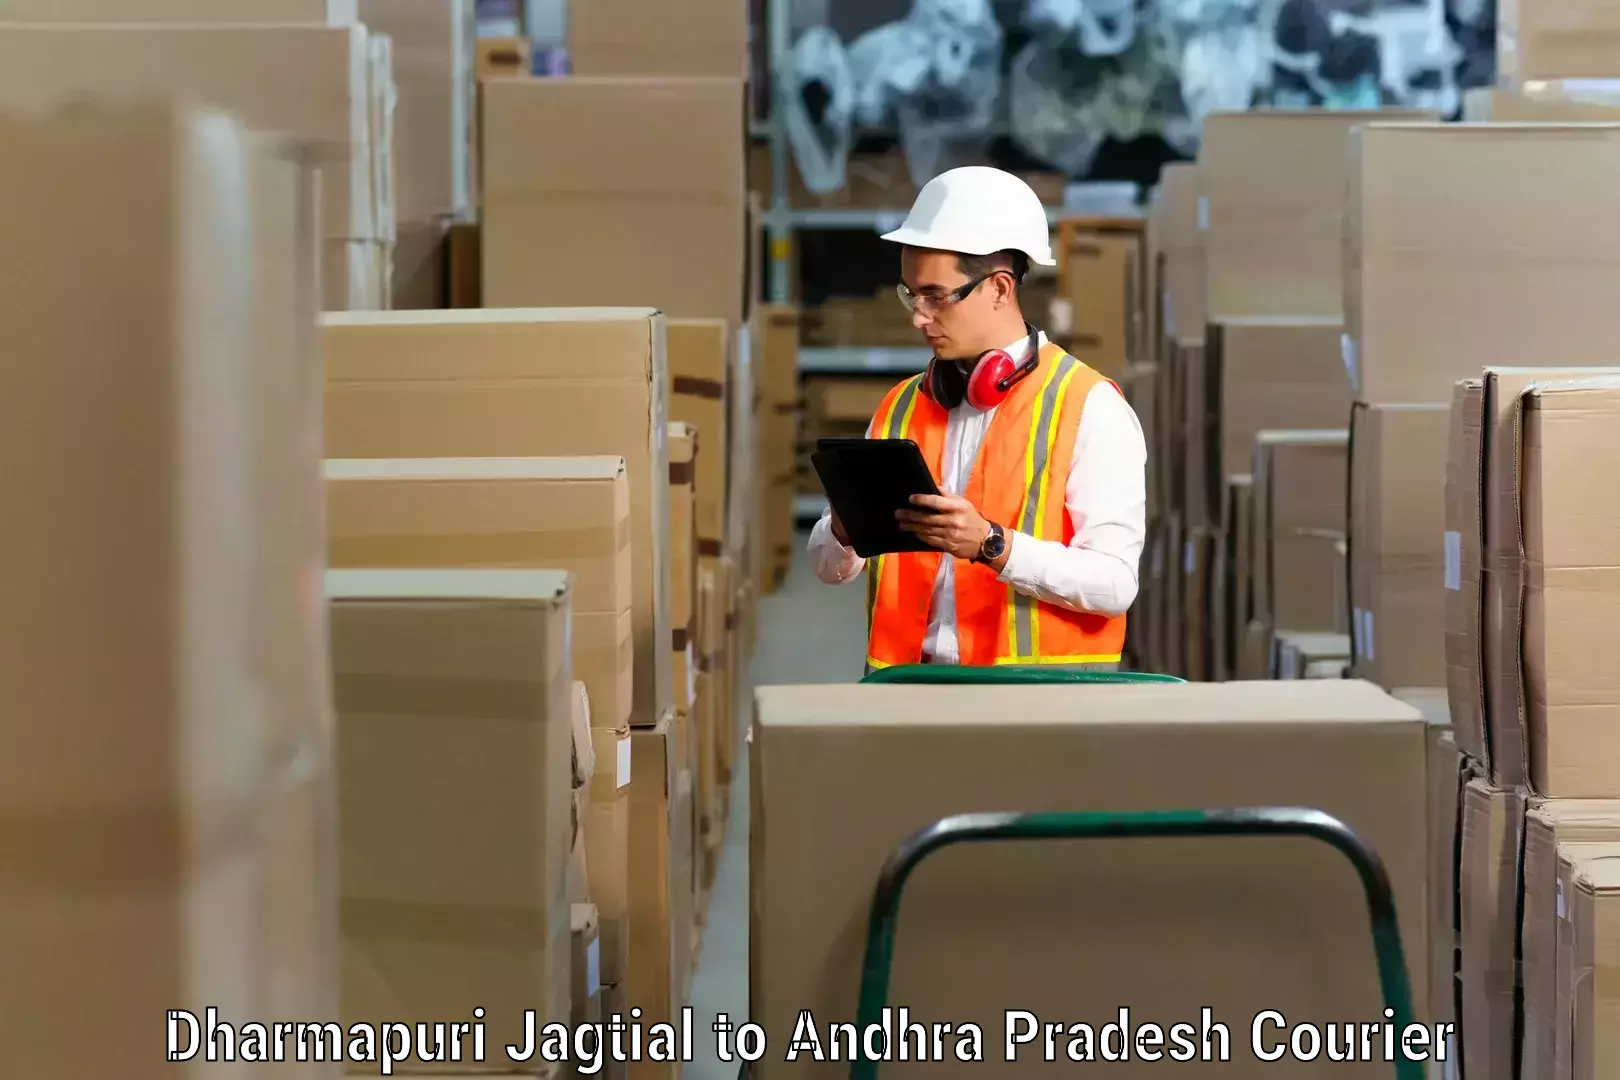 Efficient moving services Dharmapuri Jagtial to Andhra Pradesh